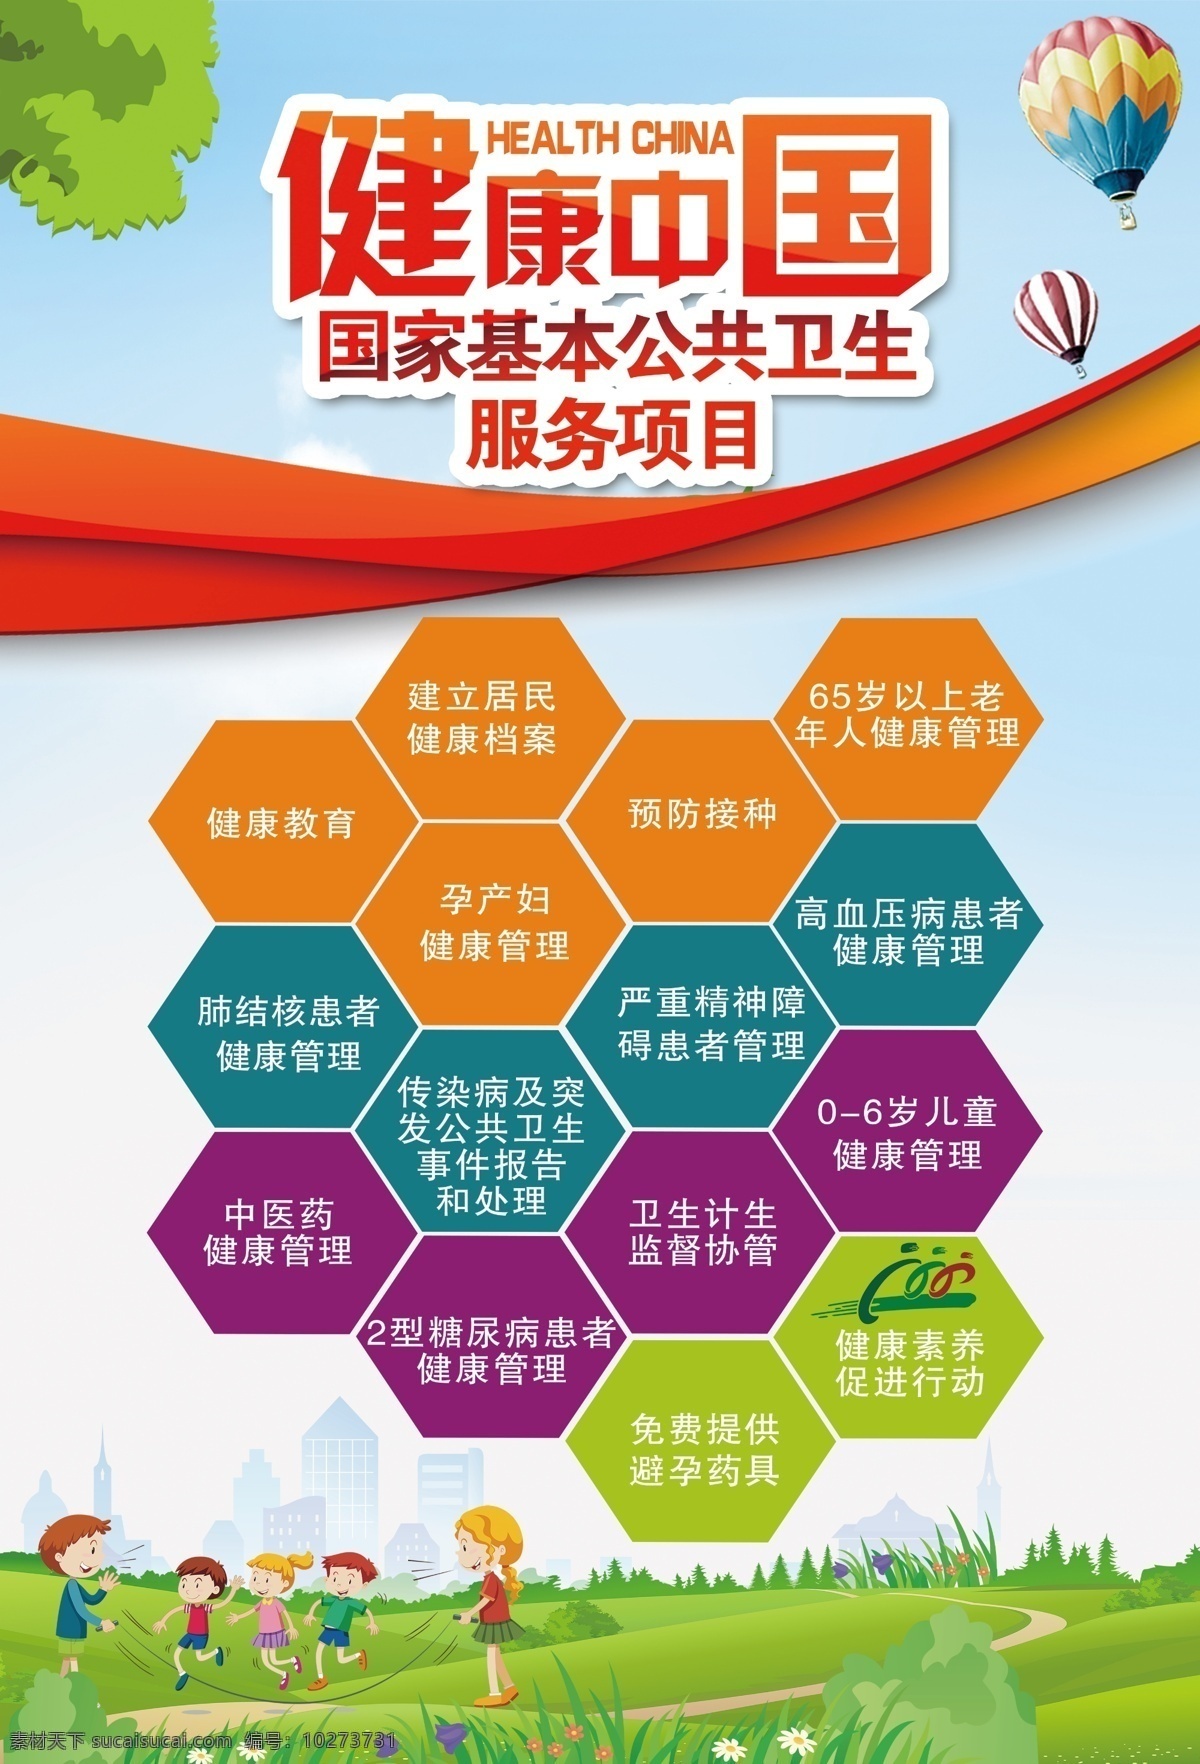 健康 中国 展板 基本卫生服务 卫生服务 健康中国 建立卫生档案 分层